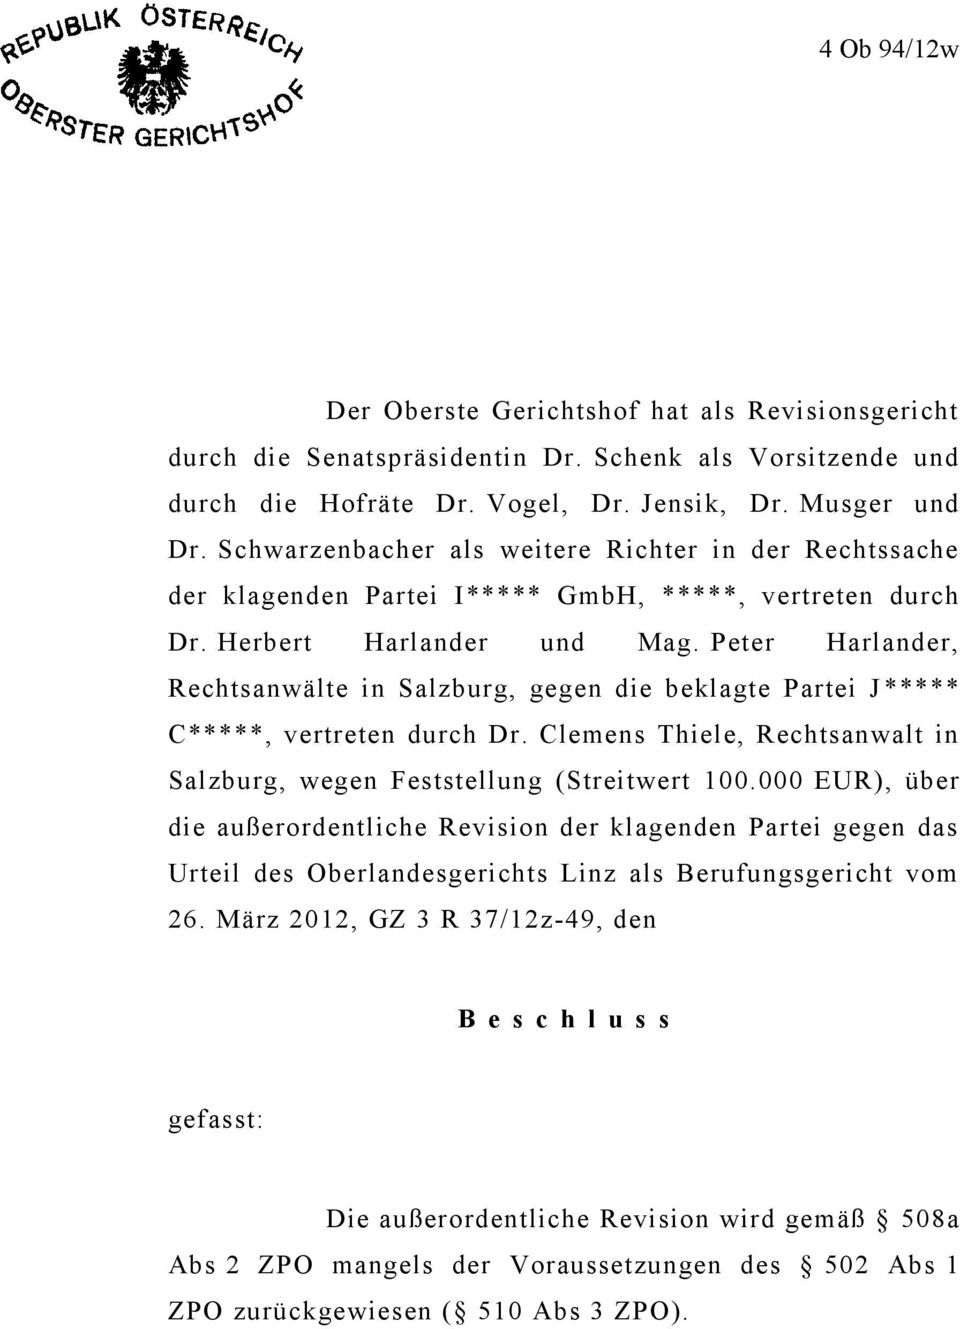 Peter Harlander, Rechtsanwälte in Salzburg, gegen die beklagte Partei J ***** C*****, vertreten durch Dr. Clemens Thiele, Rechtsanwalt in Salzburg, wegen Feststellung (Streitwert 100.